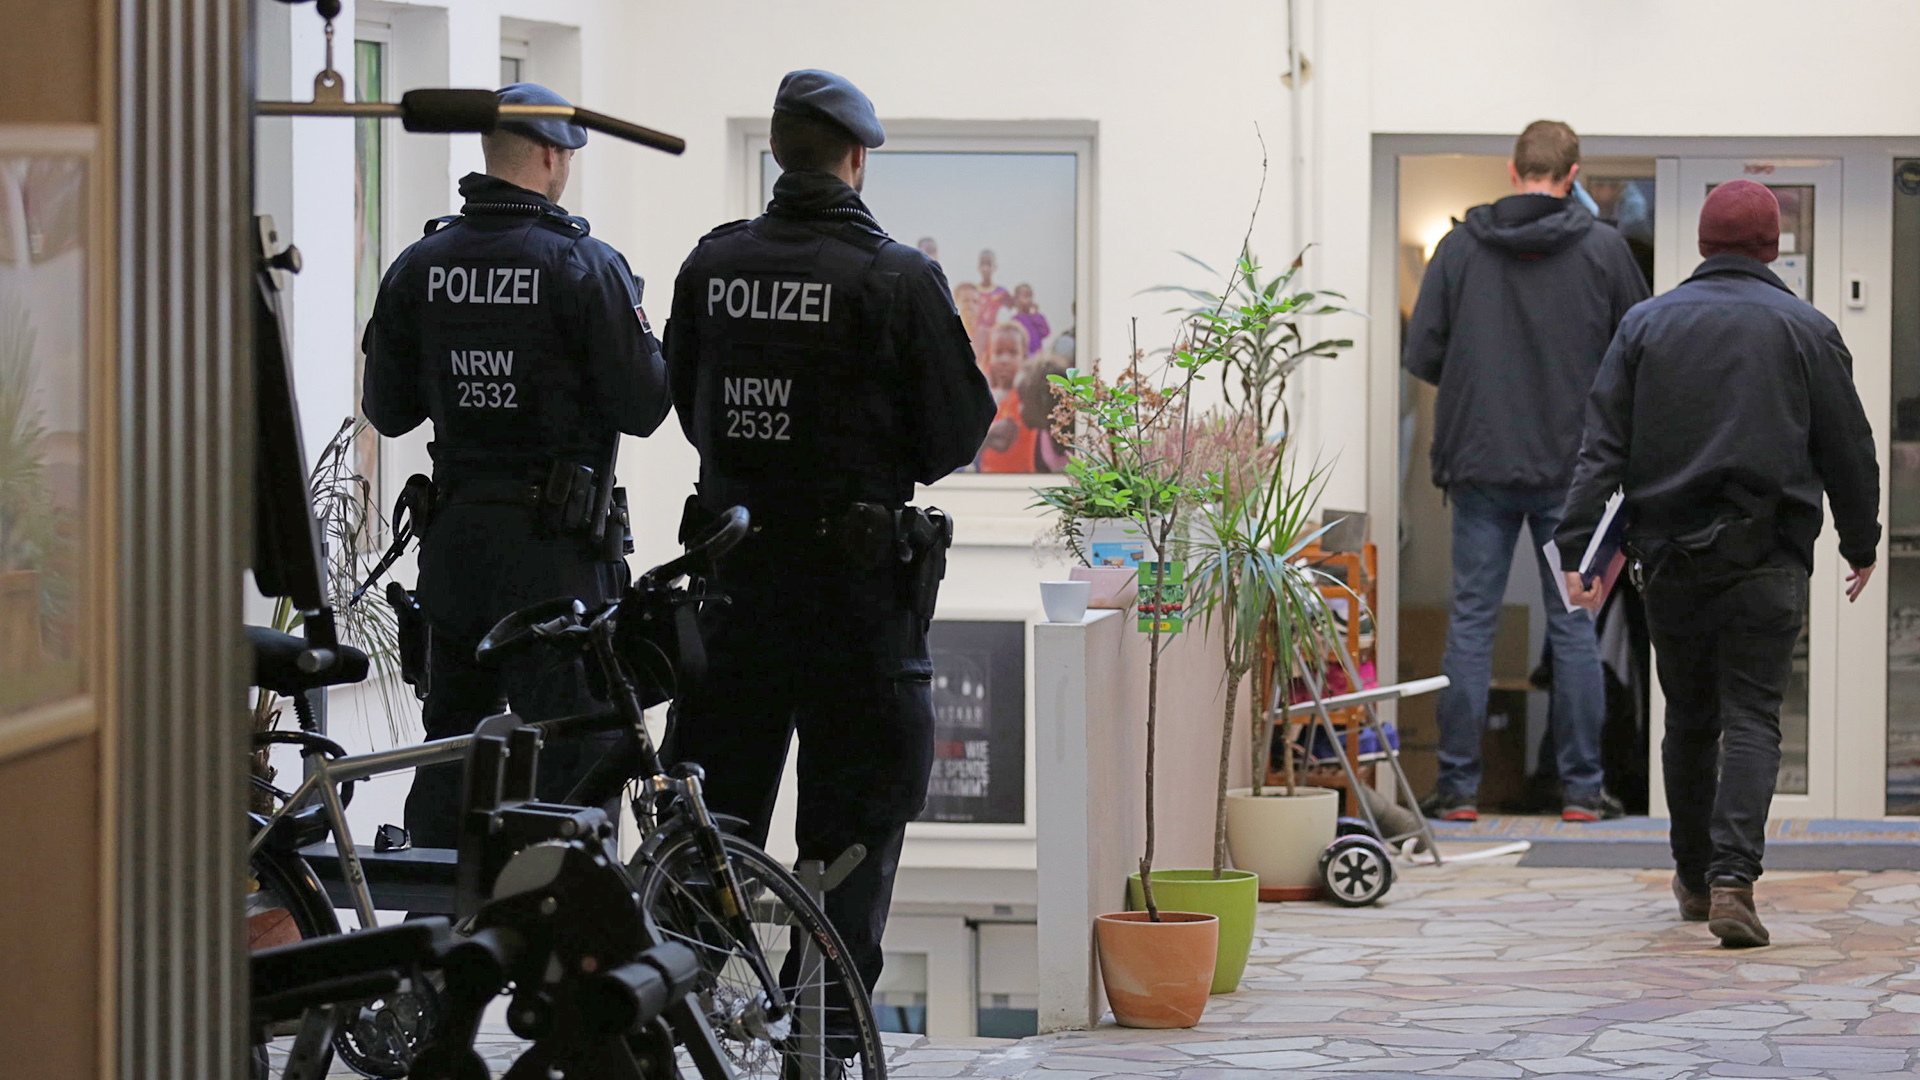  Polizeibeamte stehen vor dem Hauptsitz des Vereins Ansaar International in der Worringer Straße.